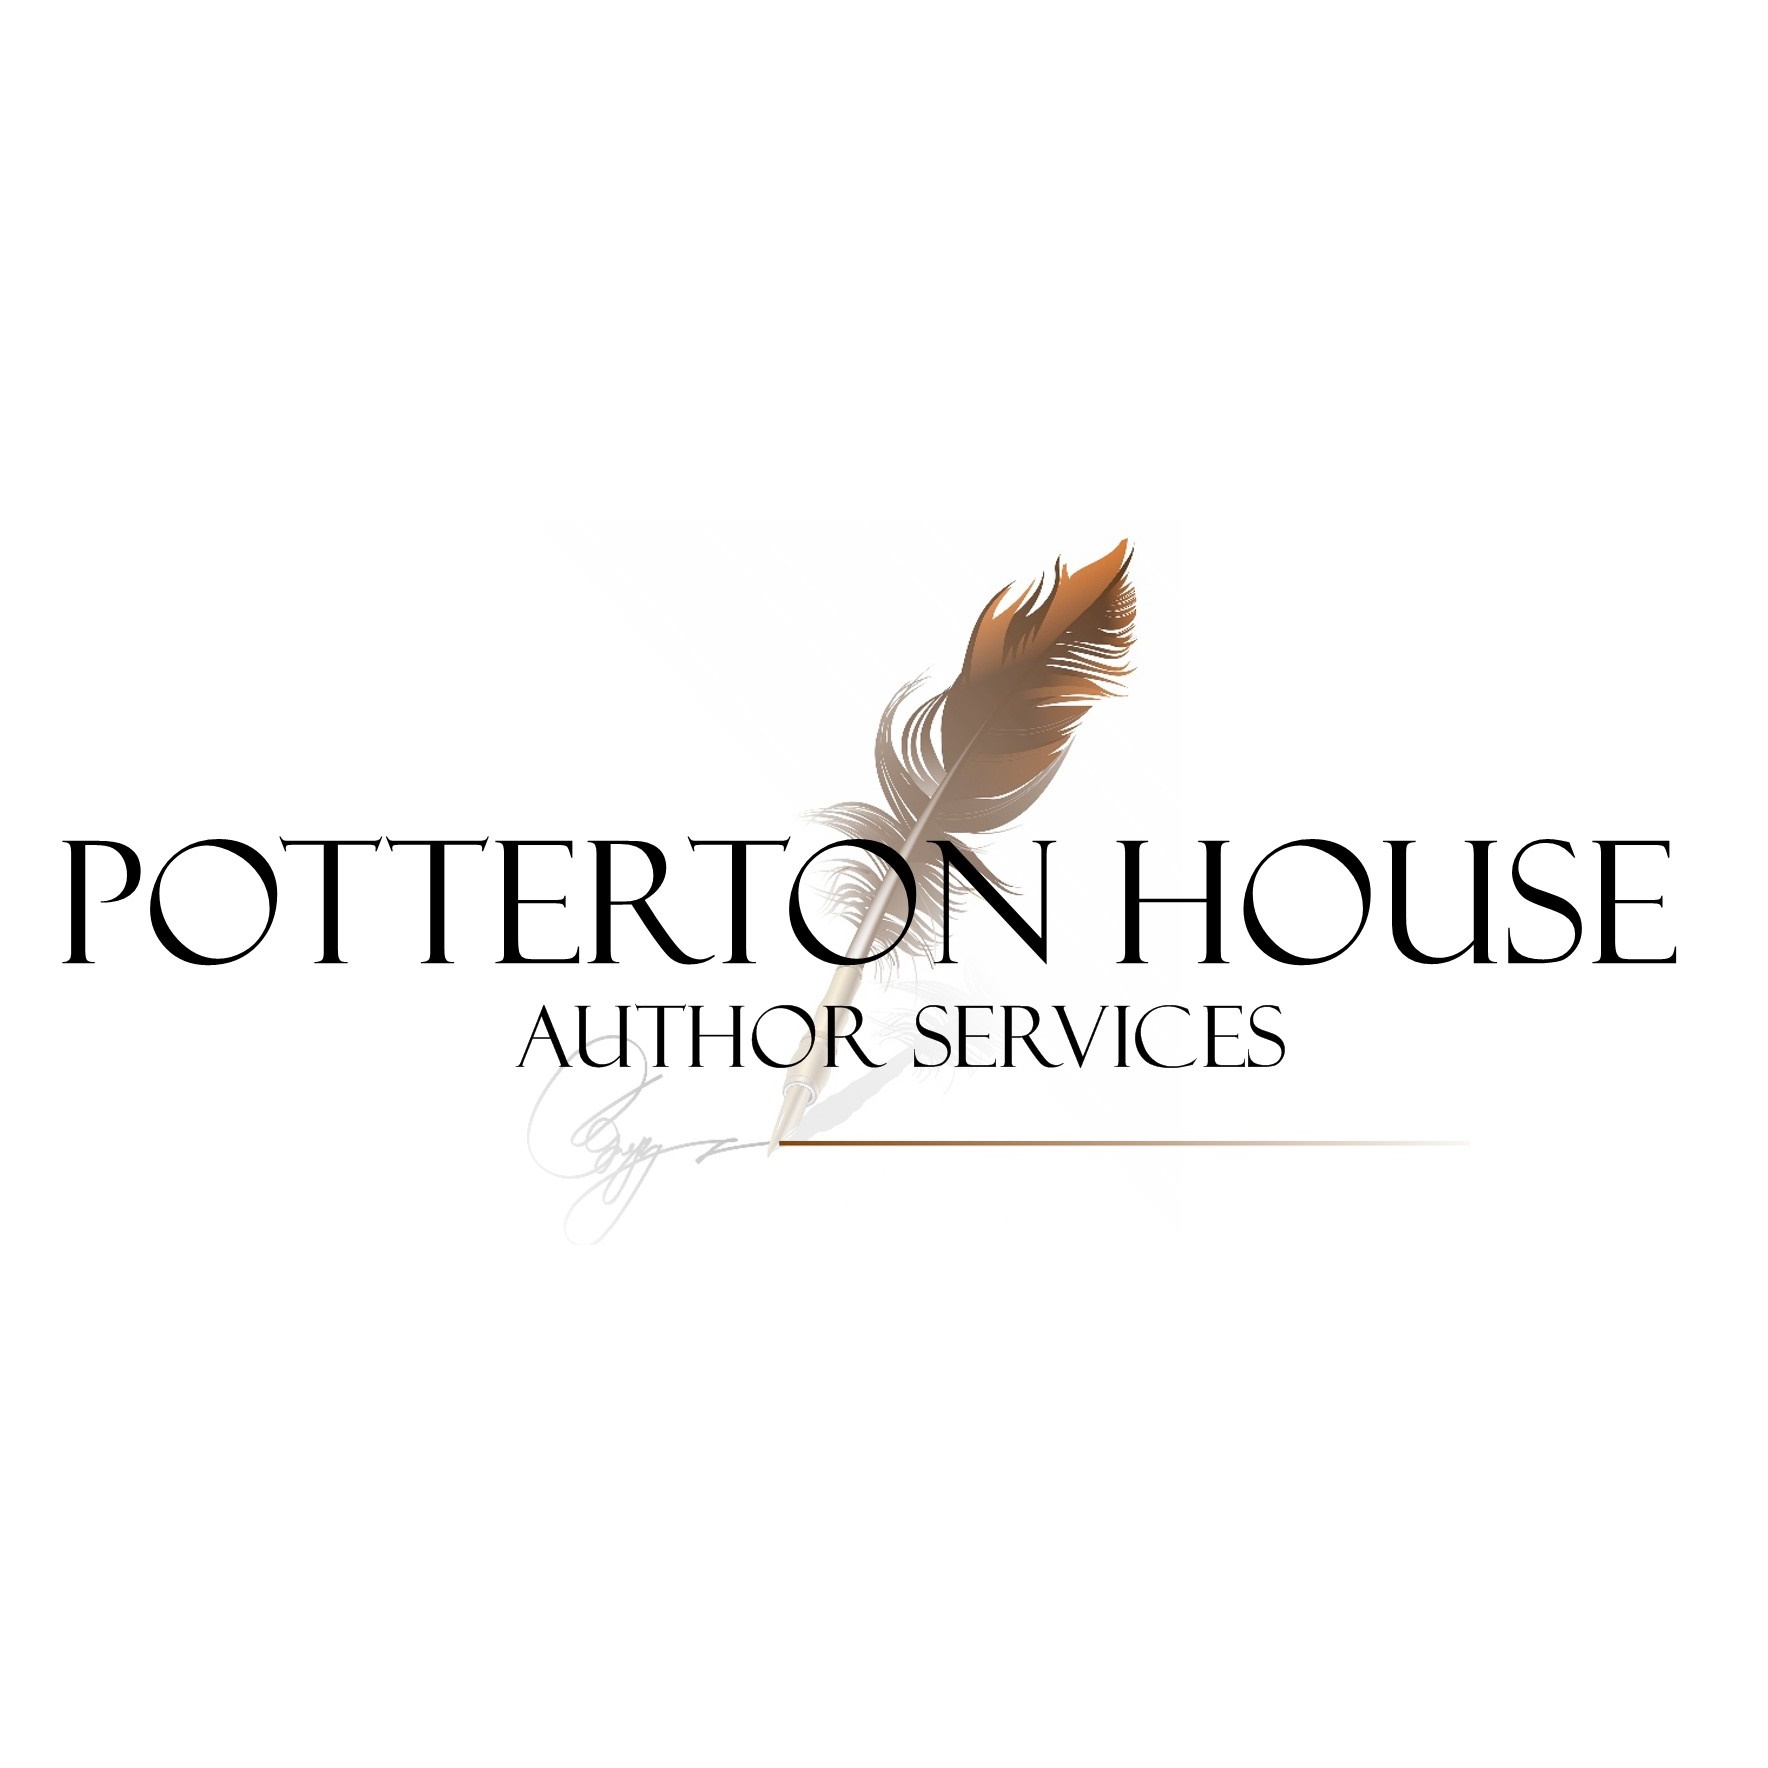  Potterton House Author Services 